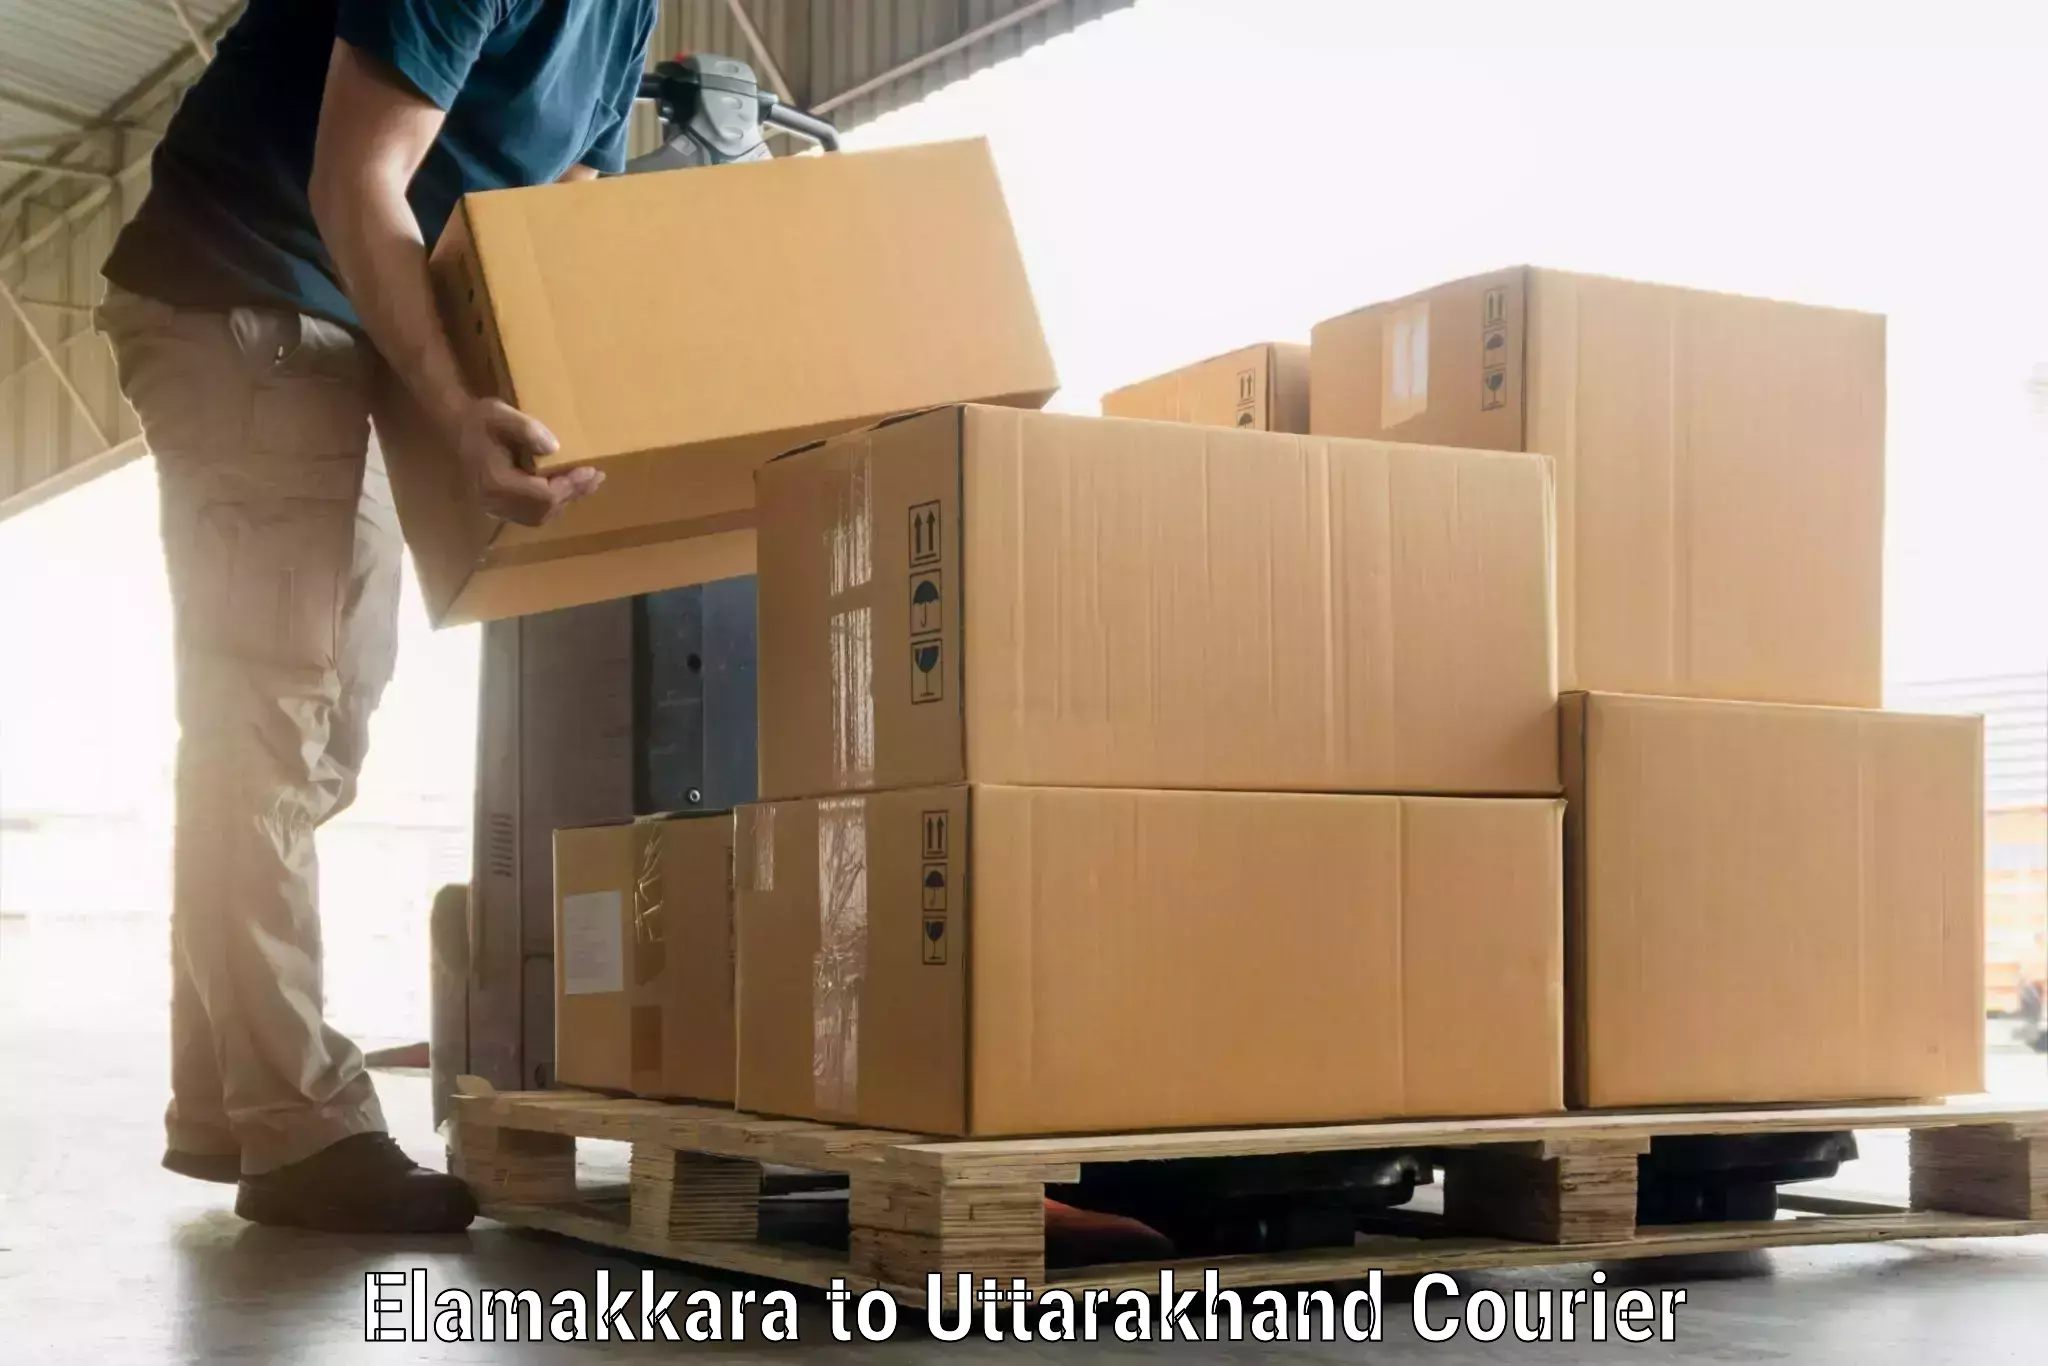 Baggage transport technology Elamakkara to Uttarakhand